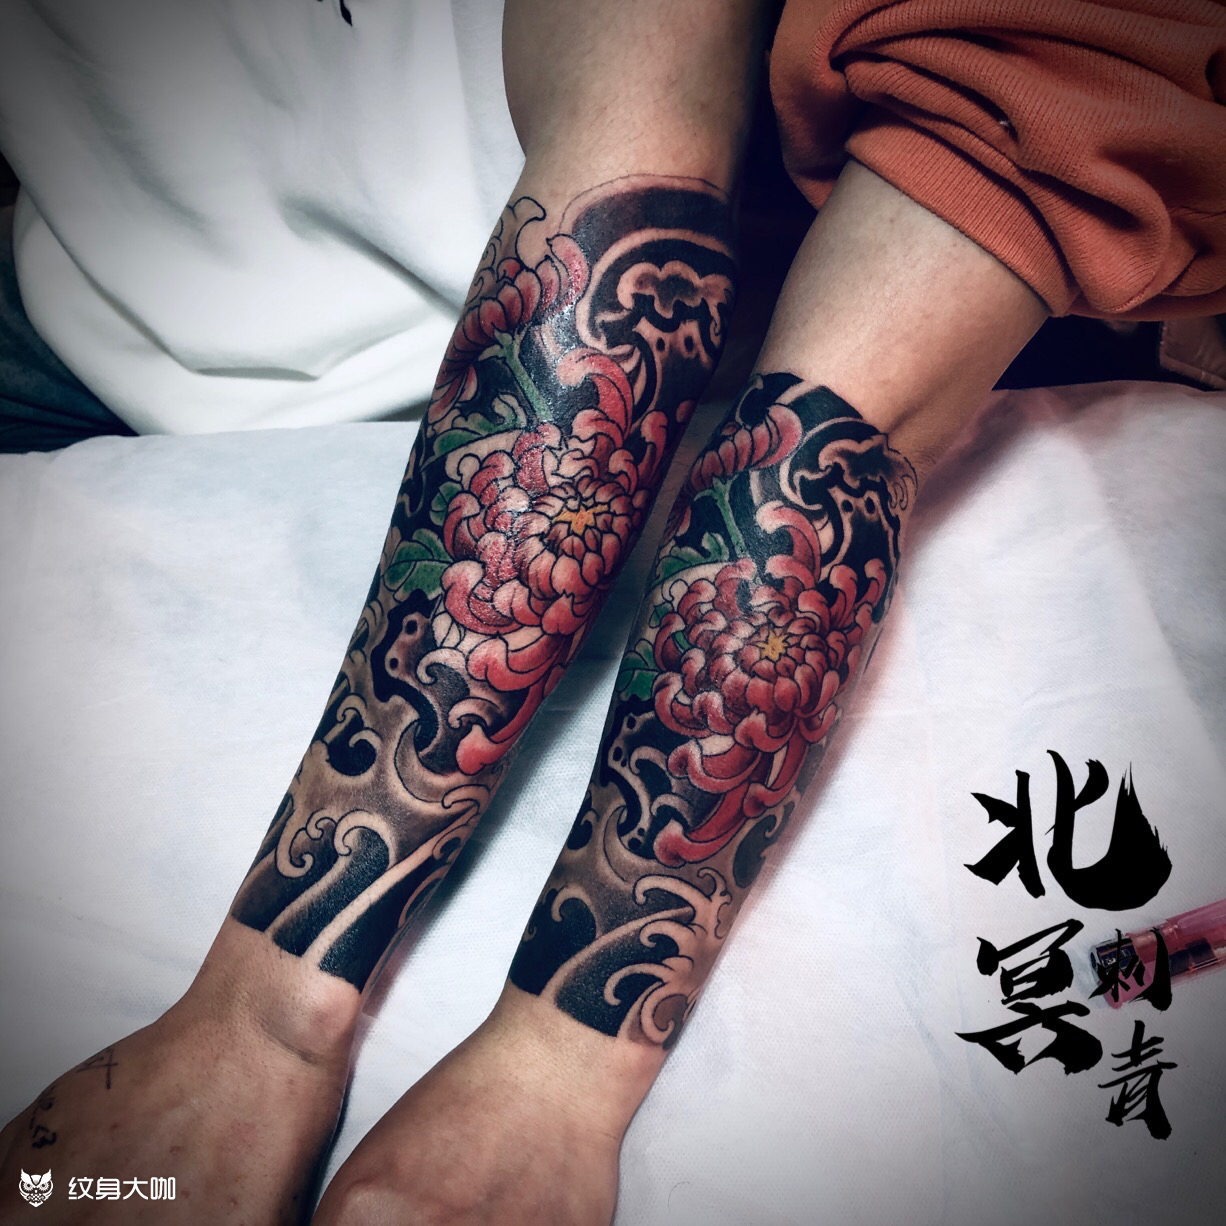 严小姐小臂树叶臂环纹身图案 - 广州纹彩刺青